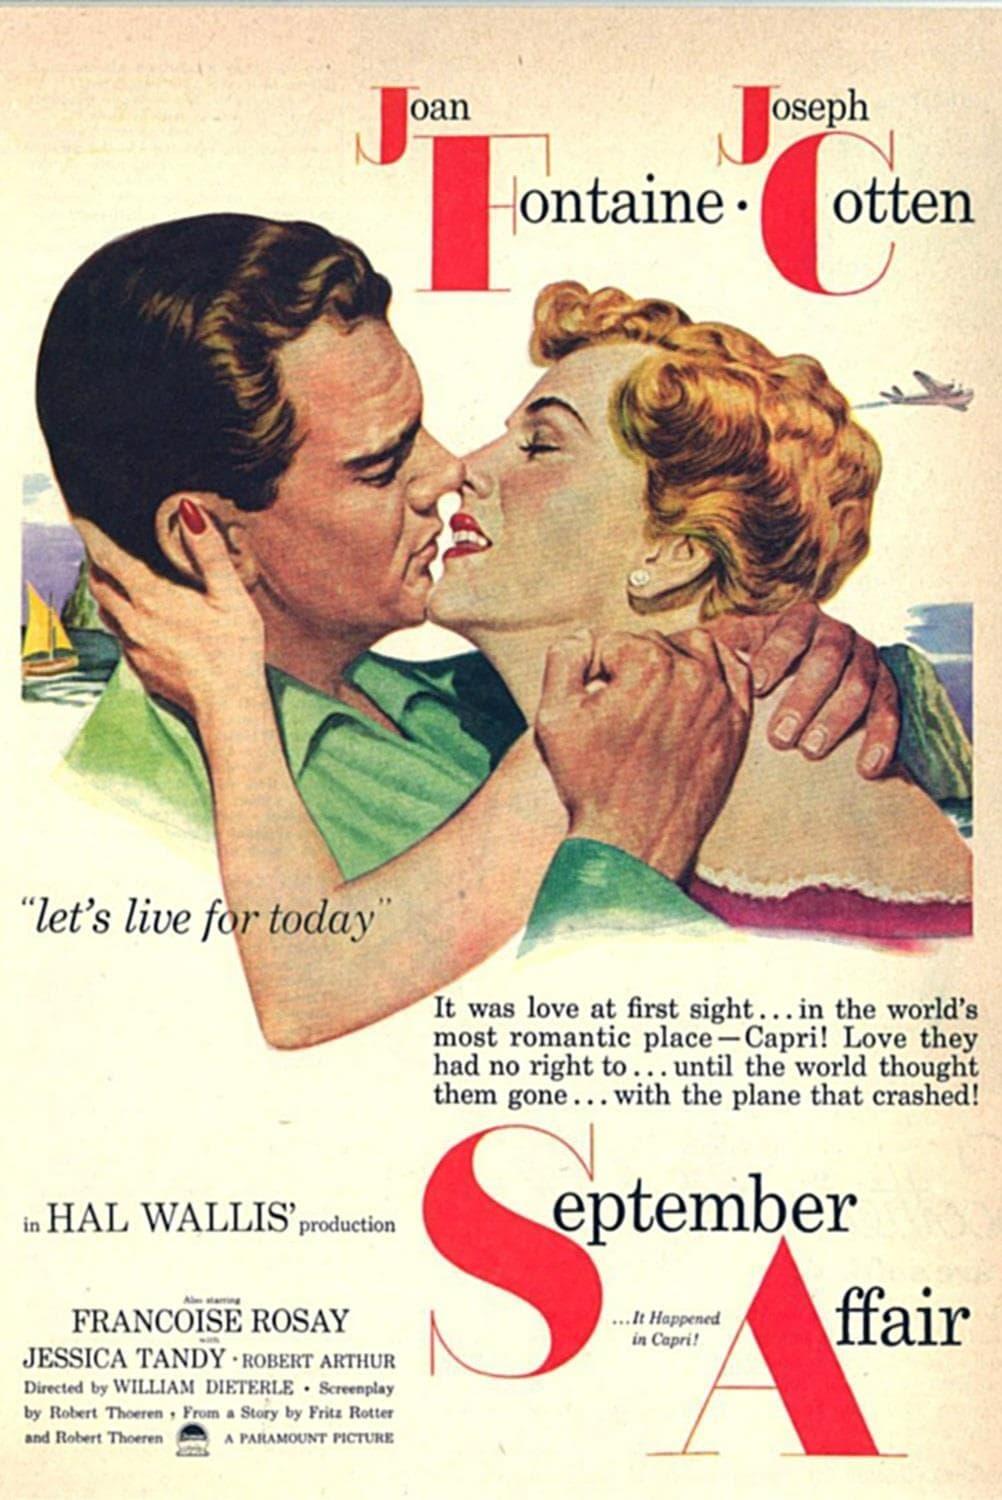 September Affair poster